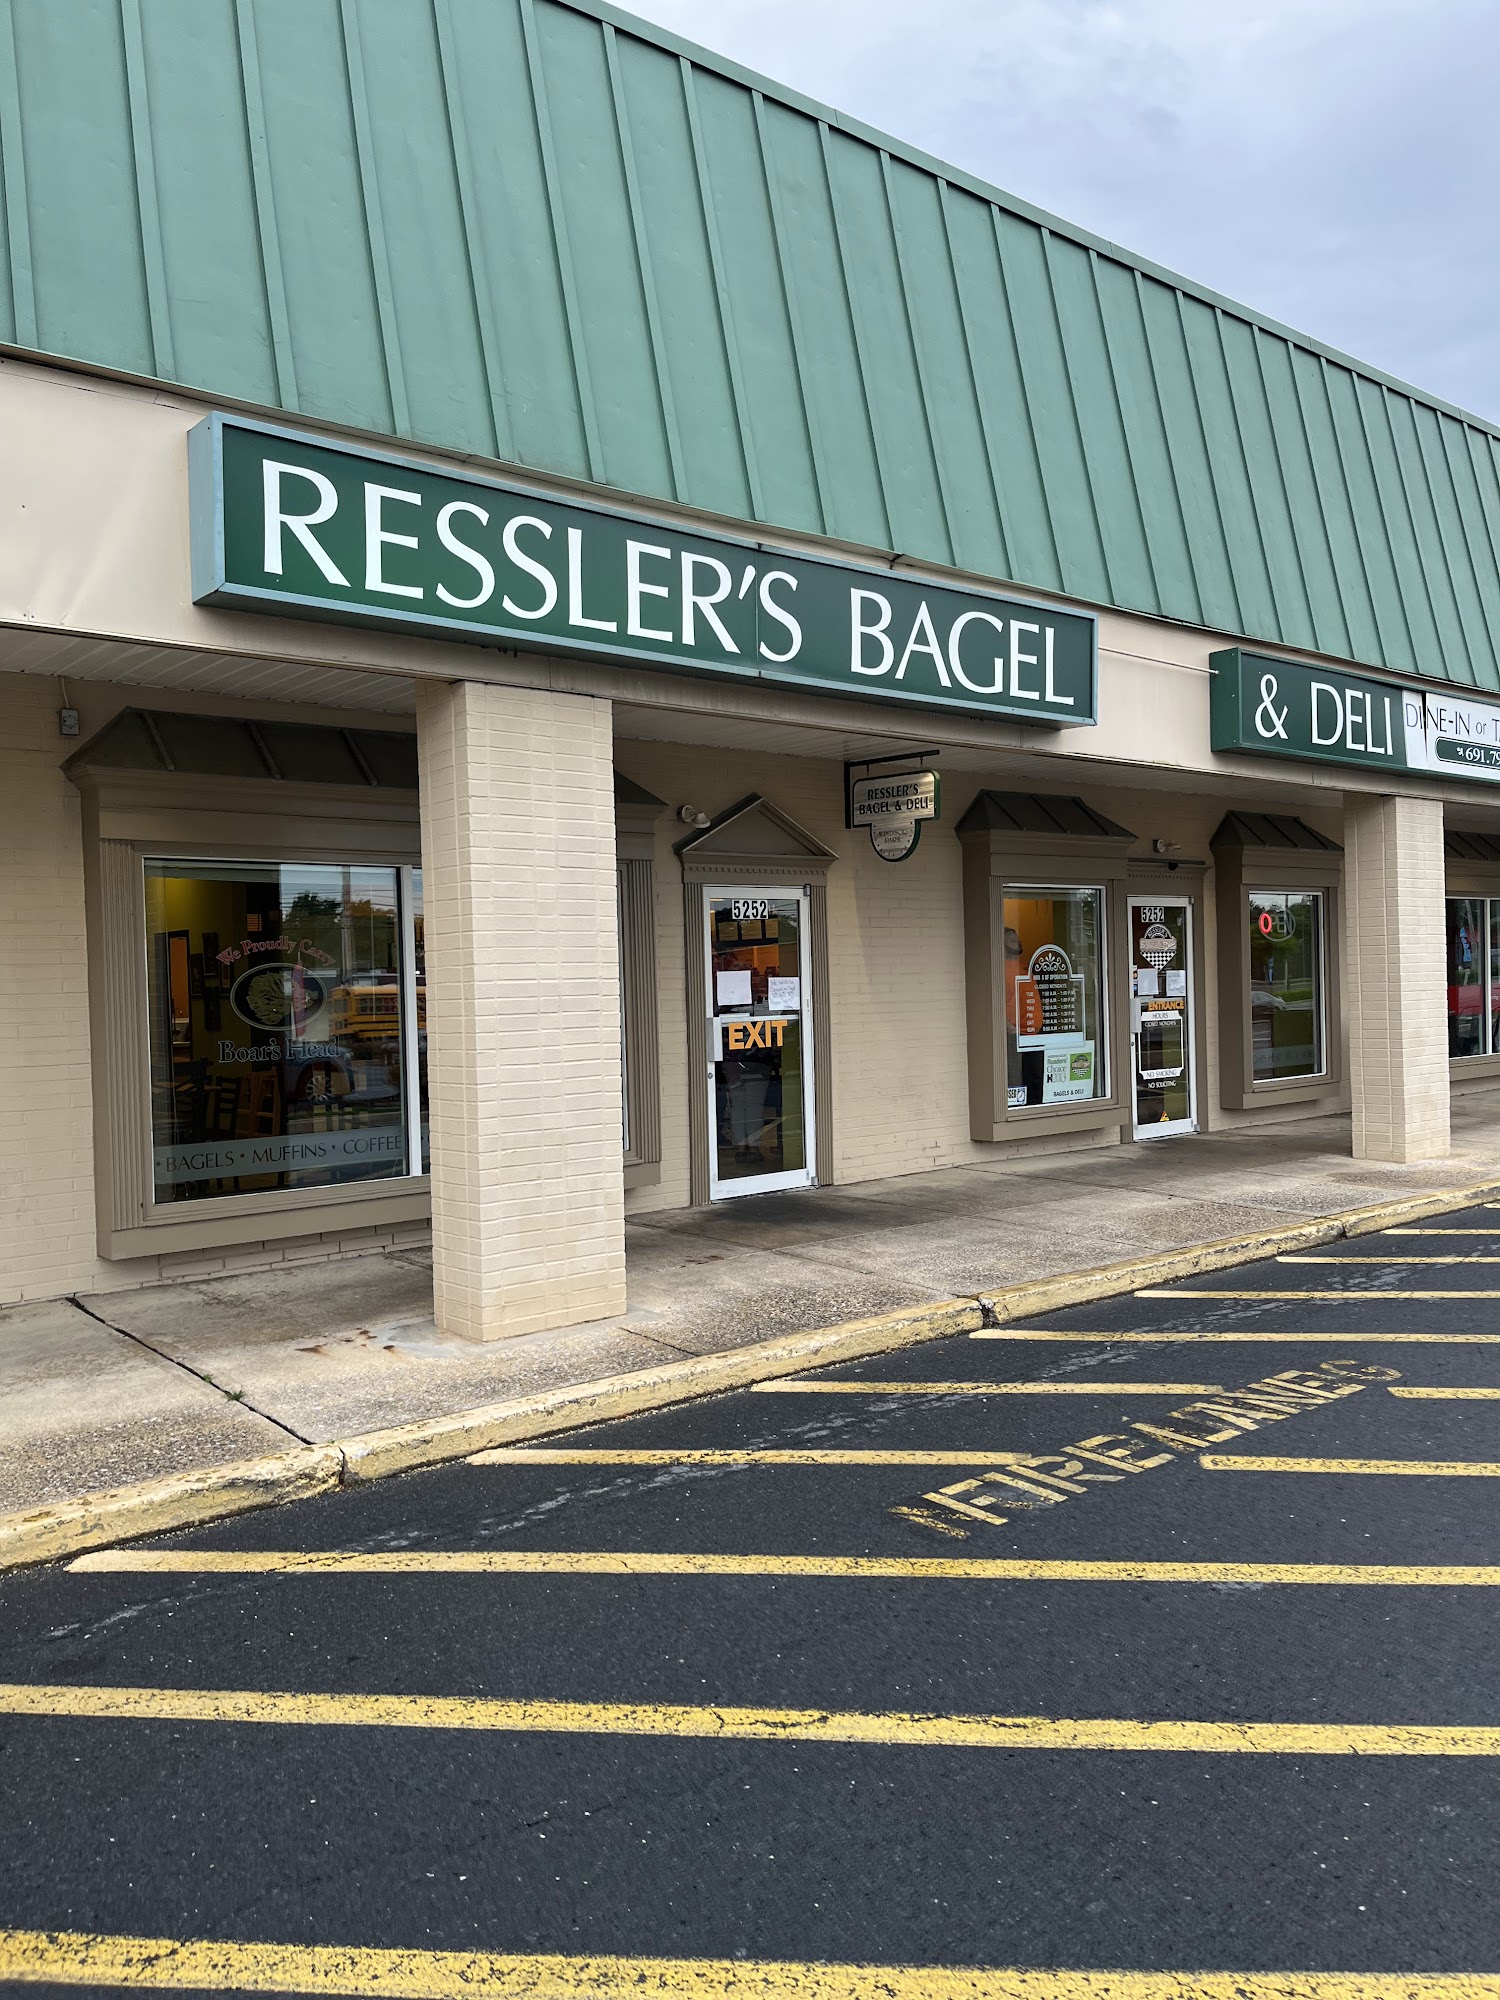 Ressler's Bagel & Deli